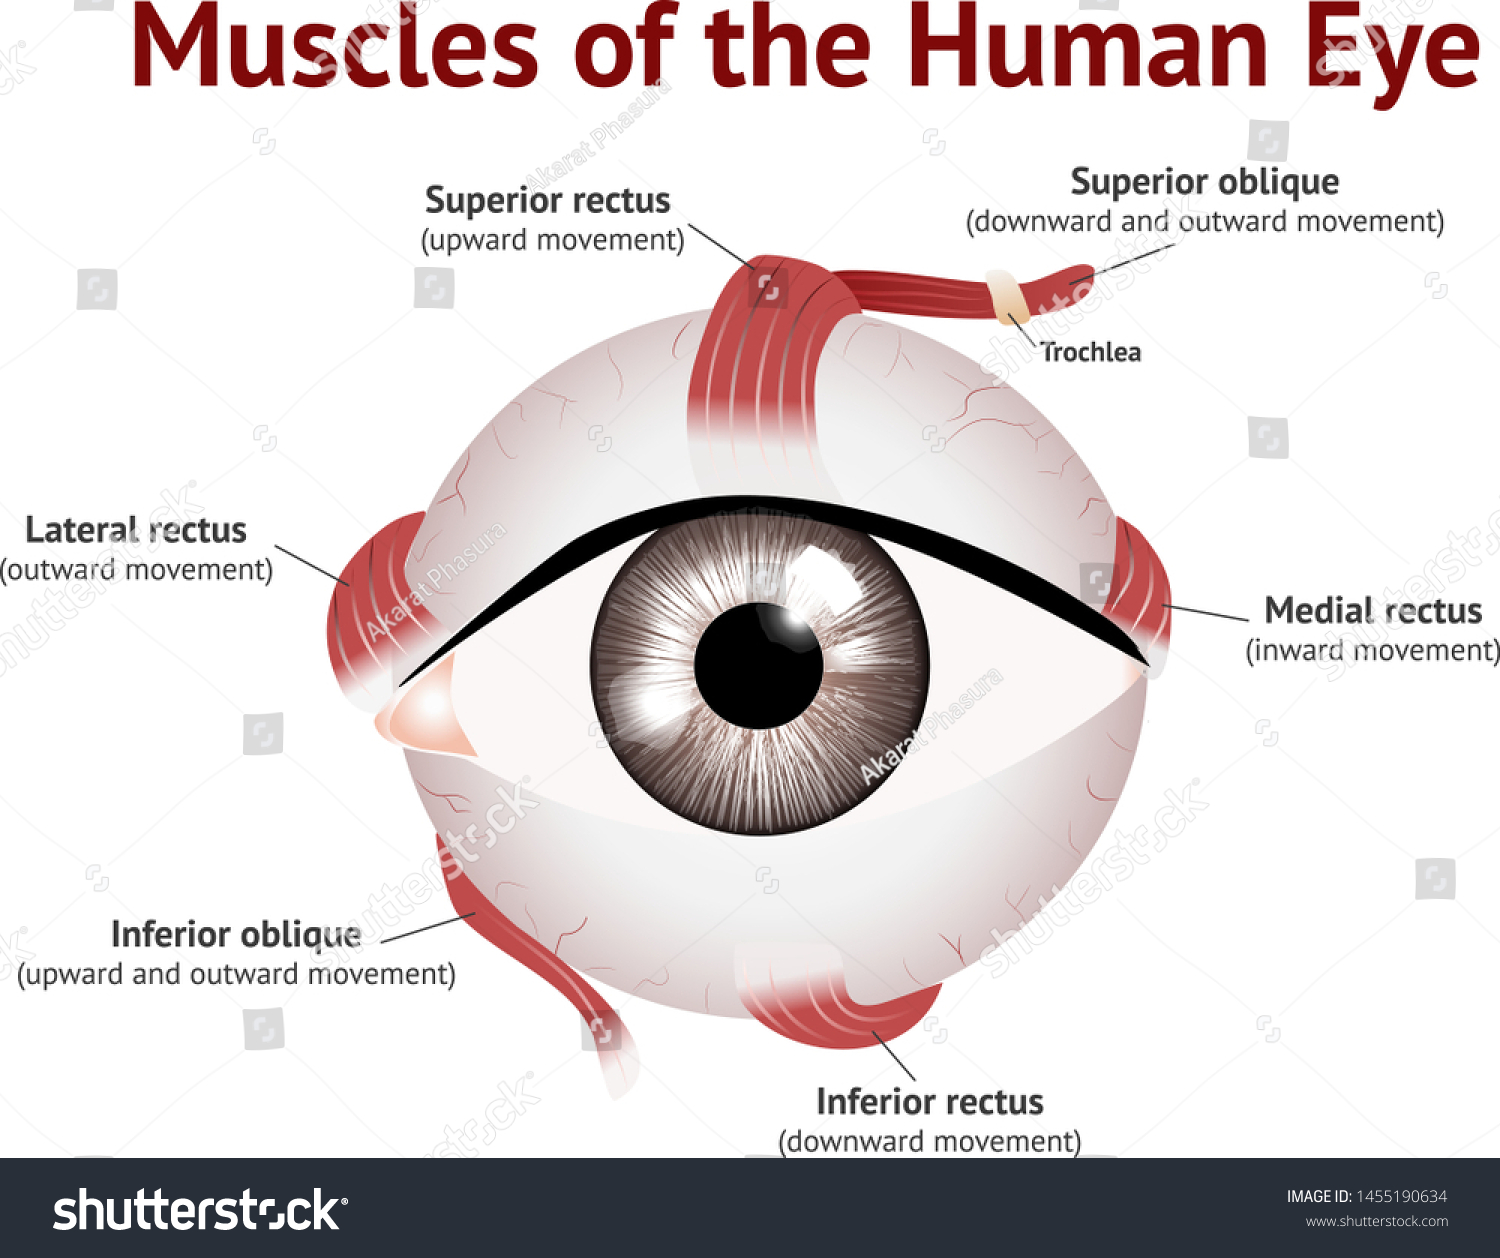 Muscles Human Eye Eye Muscle Anatomy Vector C S N Mi N Ph B N Quy N Shutterstock